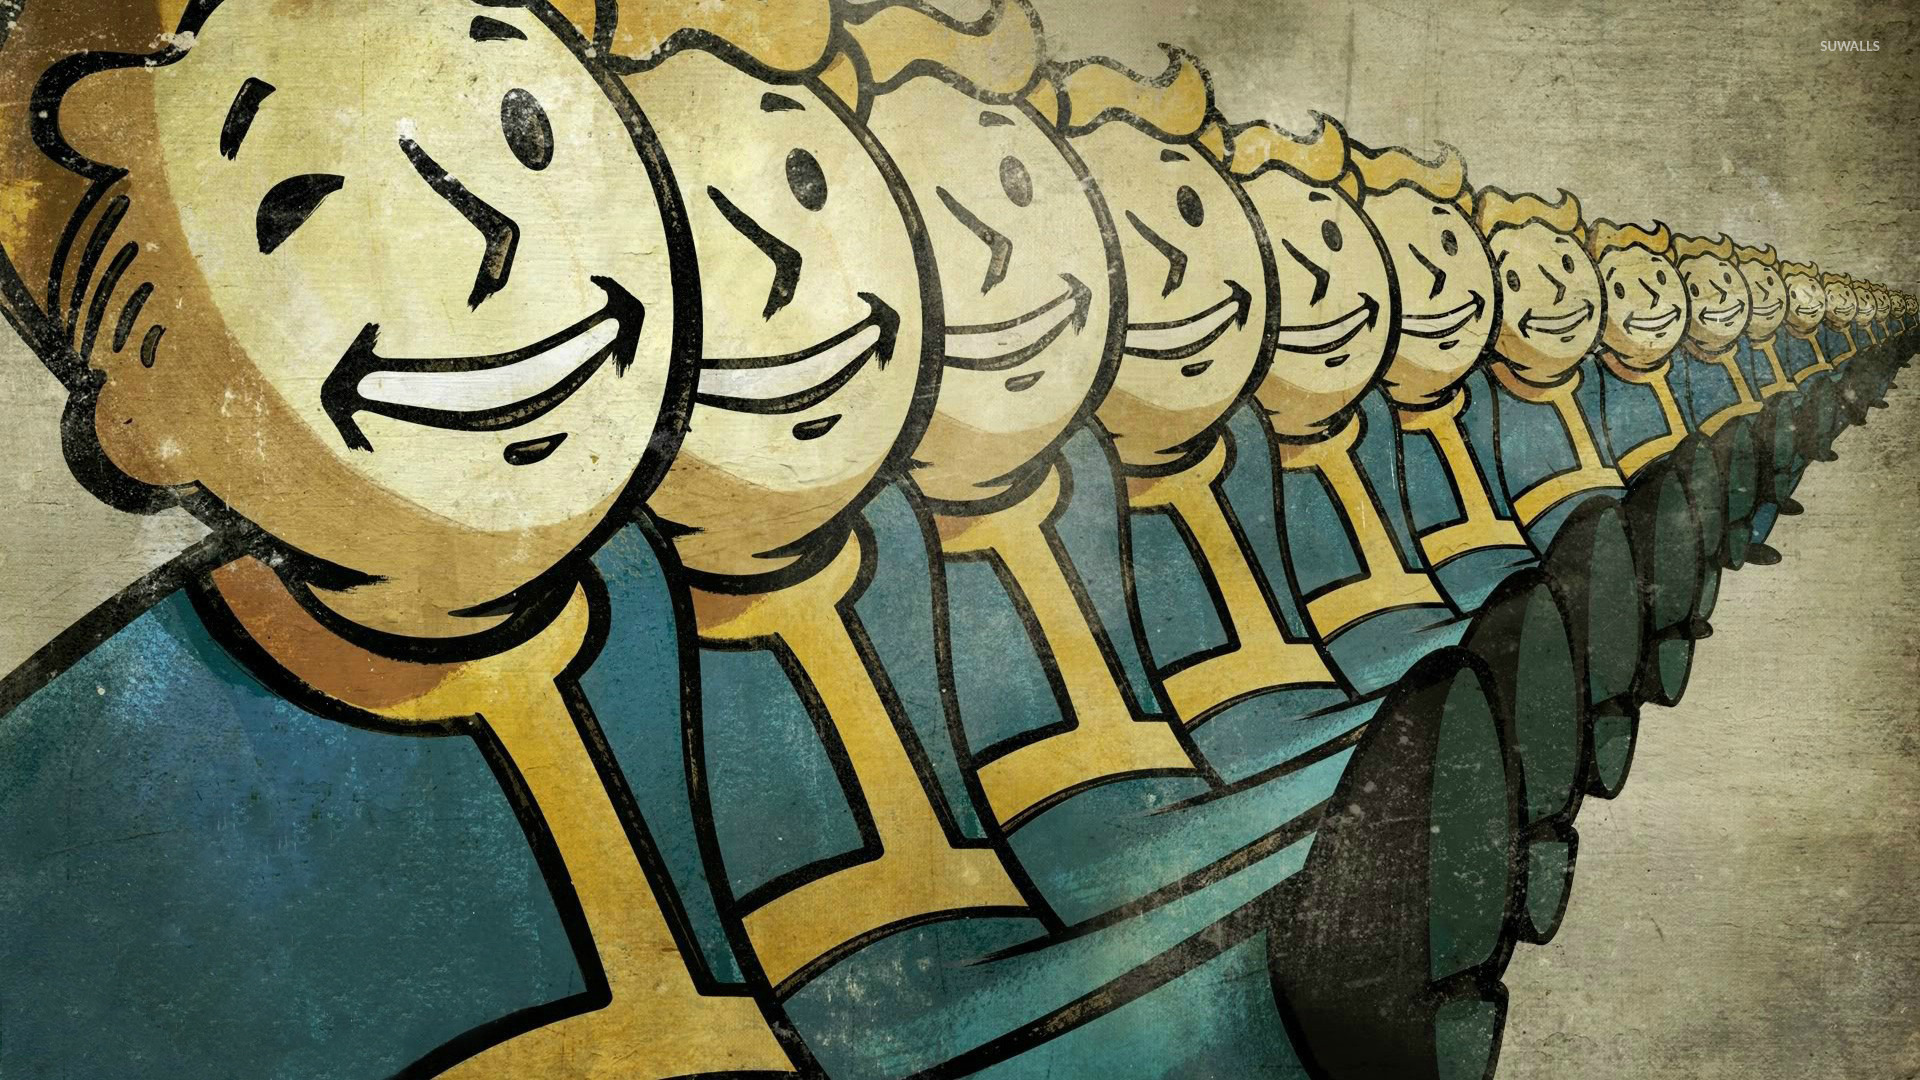 Vault Boy Fallout Wallpaper Game